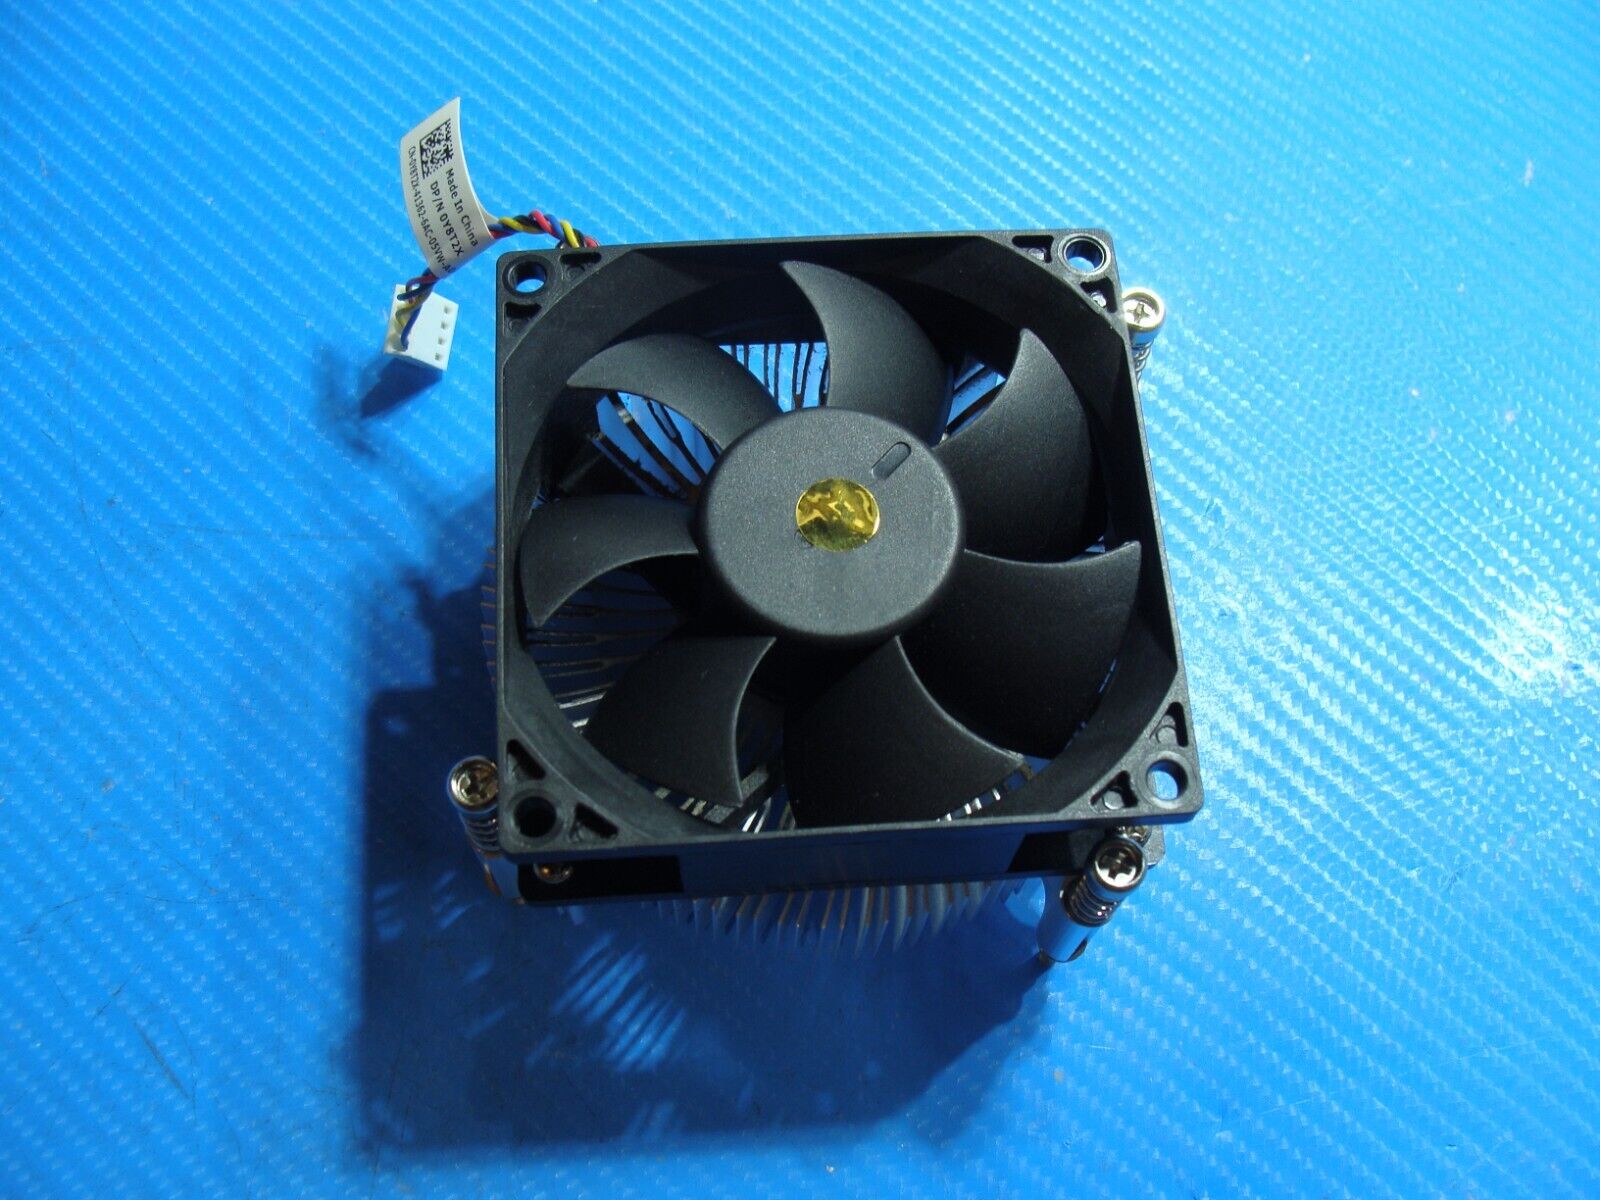 Dell XPS 8910 Desktop CPU Cooling Fan w/Heatsink 3VRGY